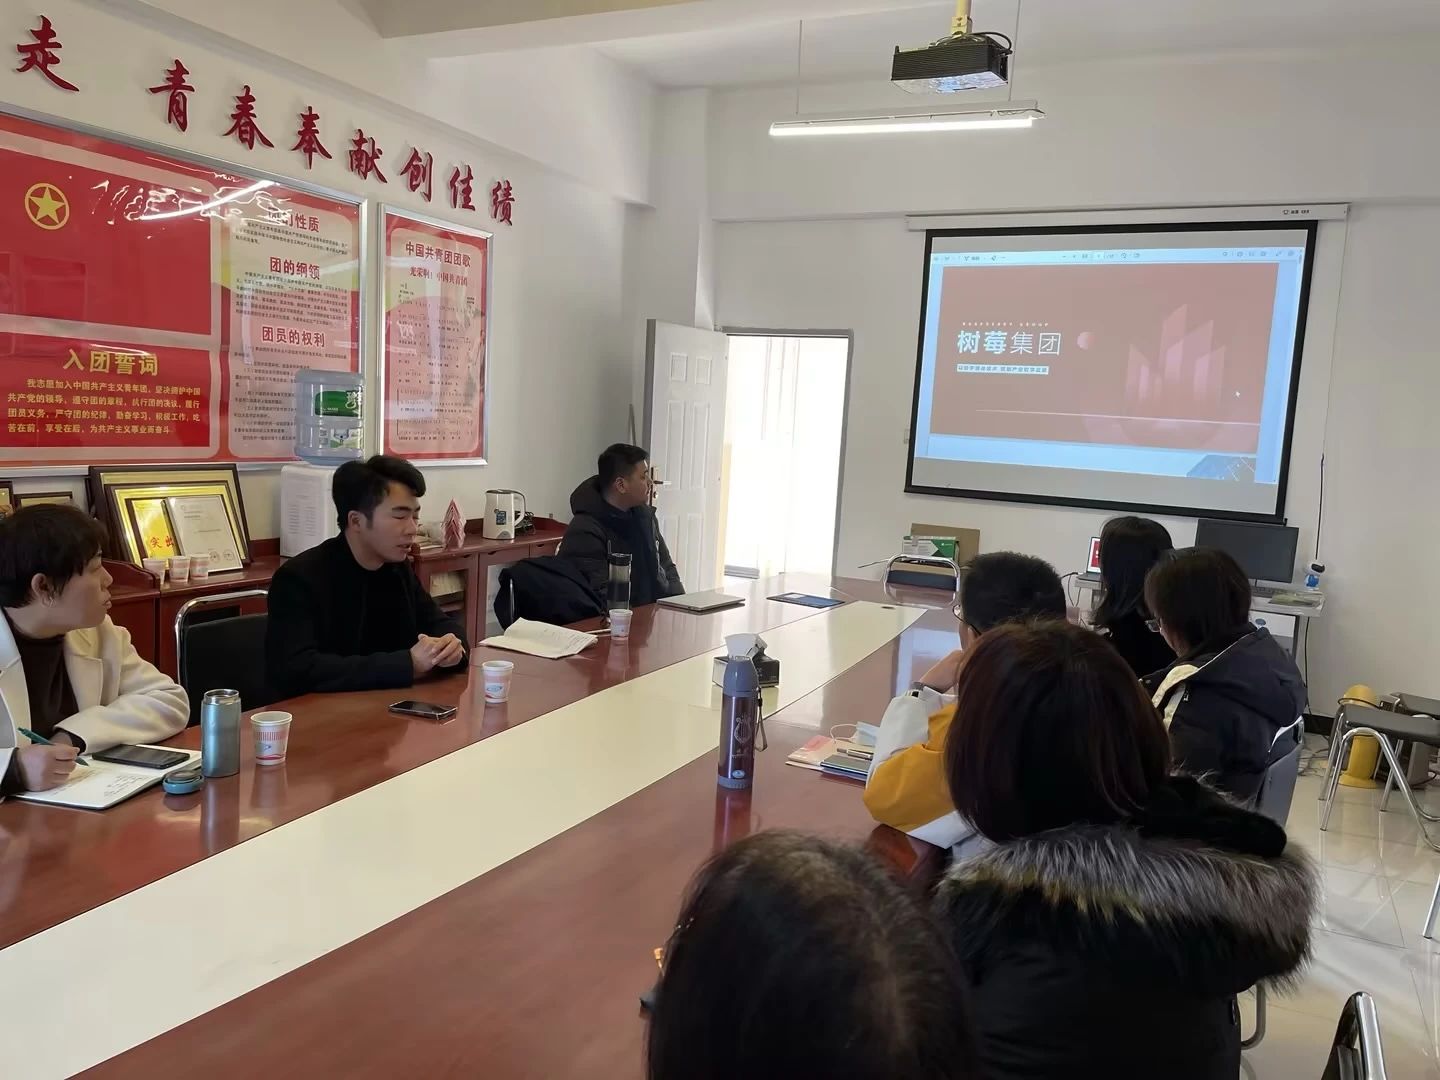 树莓集团董事长王凯等领导一行赴云南机电职业技术学院 信息工程学院